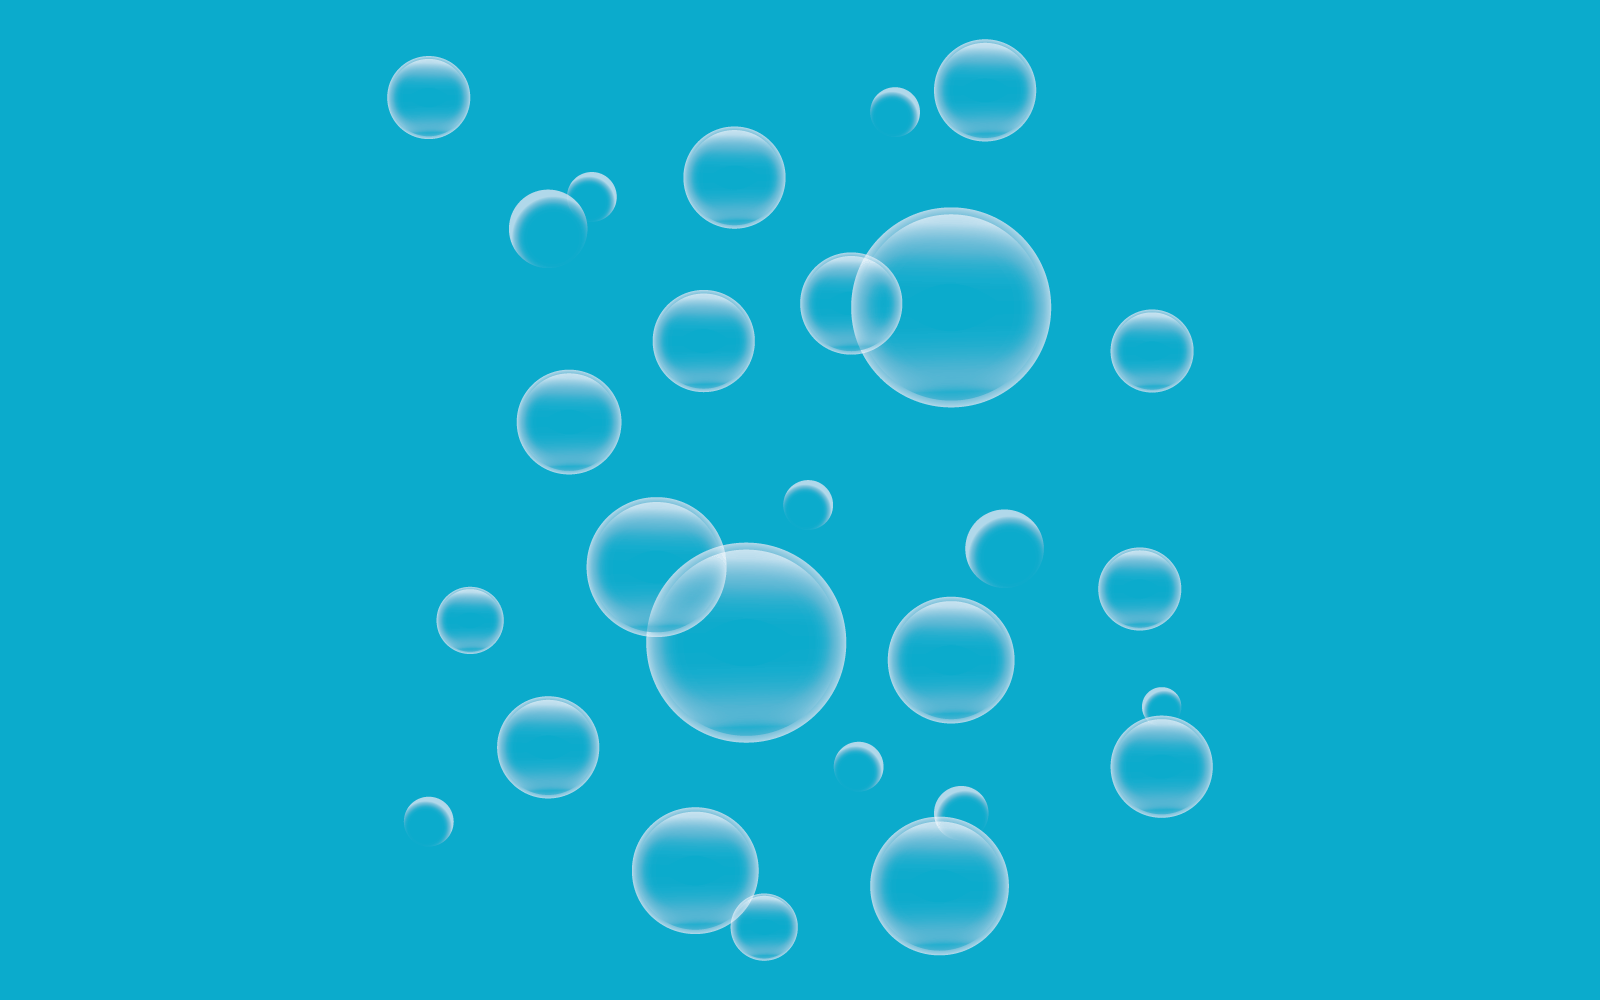 Natural realistic bubble illustration design